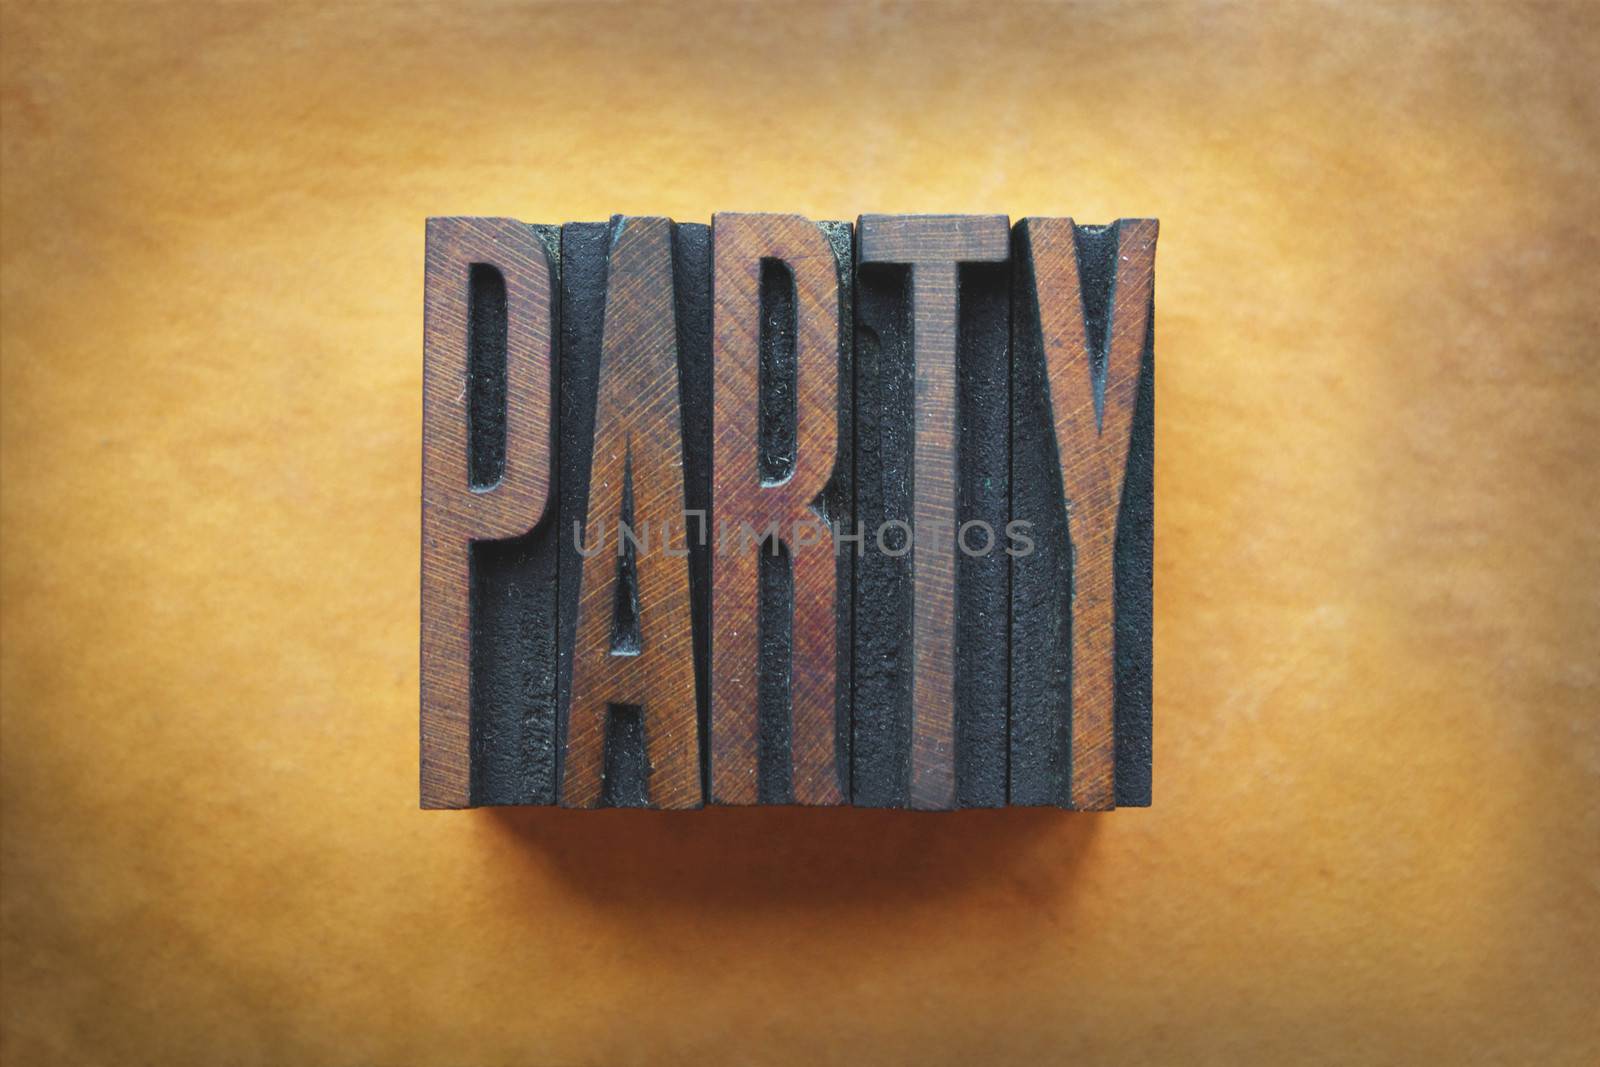 The word PARTY written in vintage letterpress type.